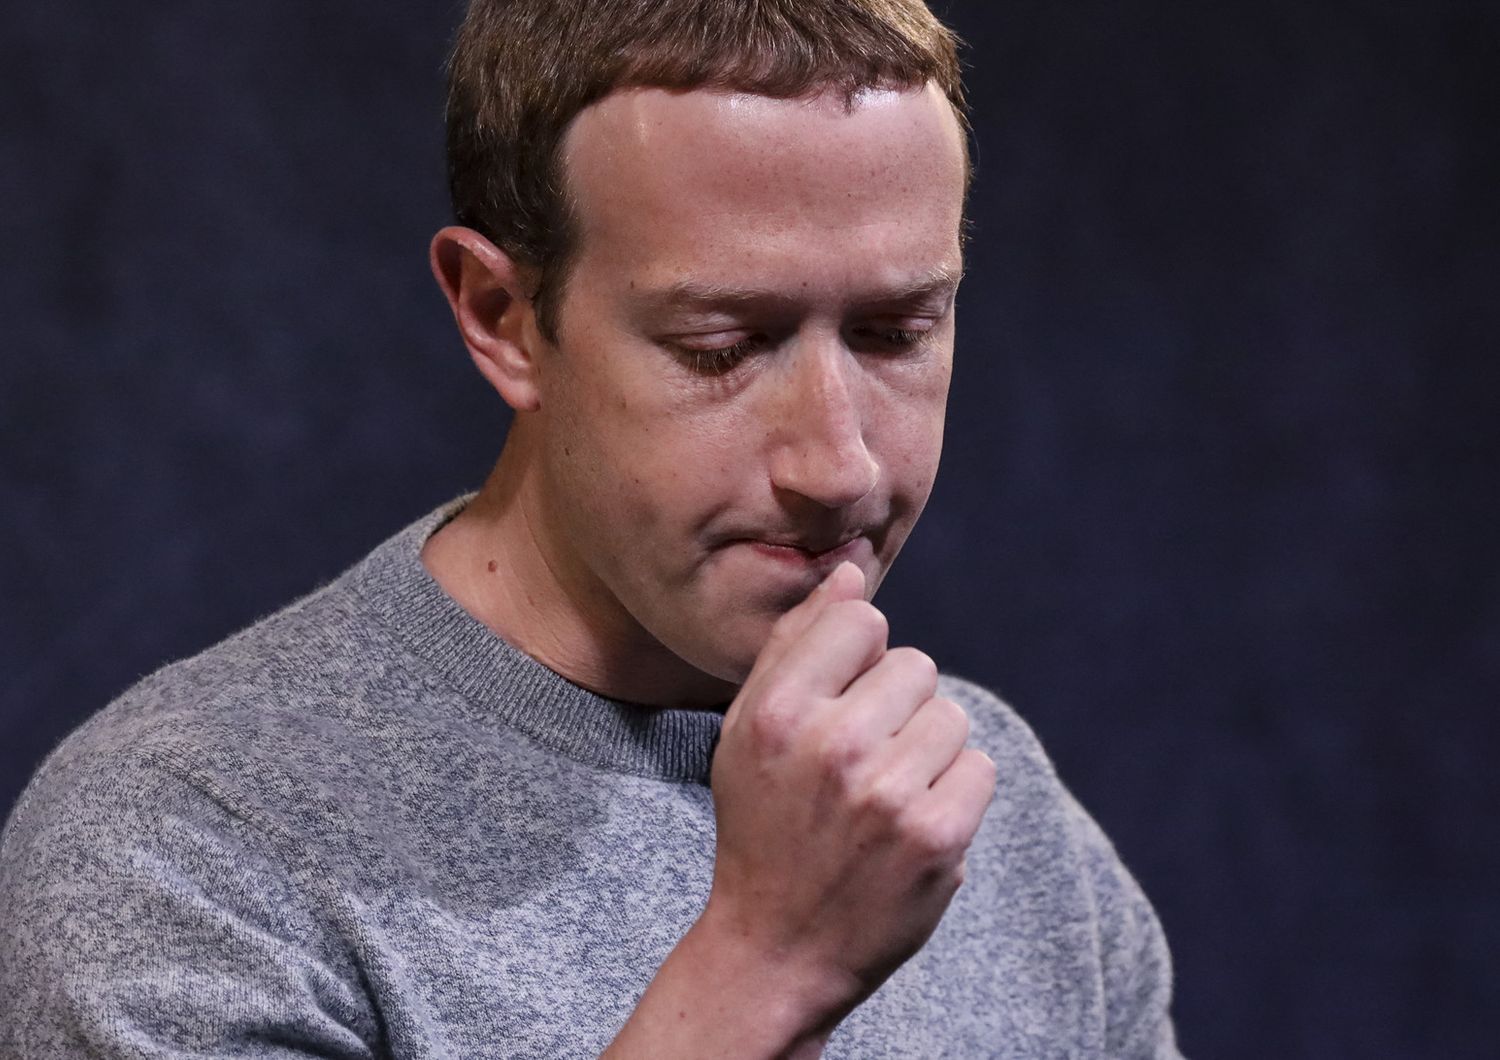 facebook ricavi crescono ma sotto attese terzo trimestre